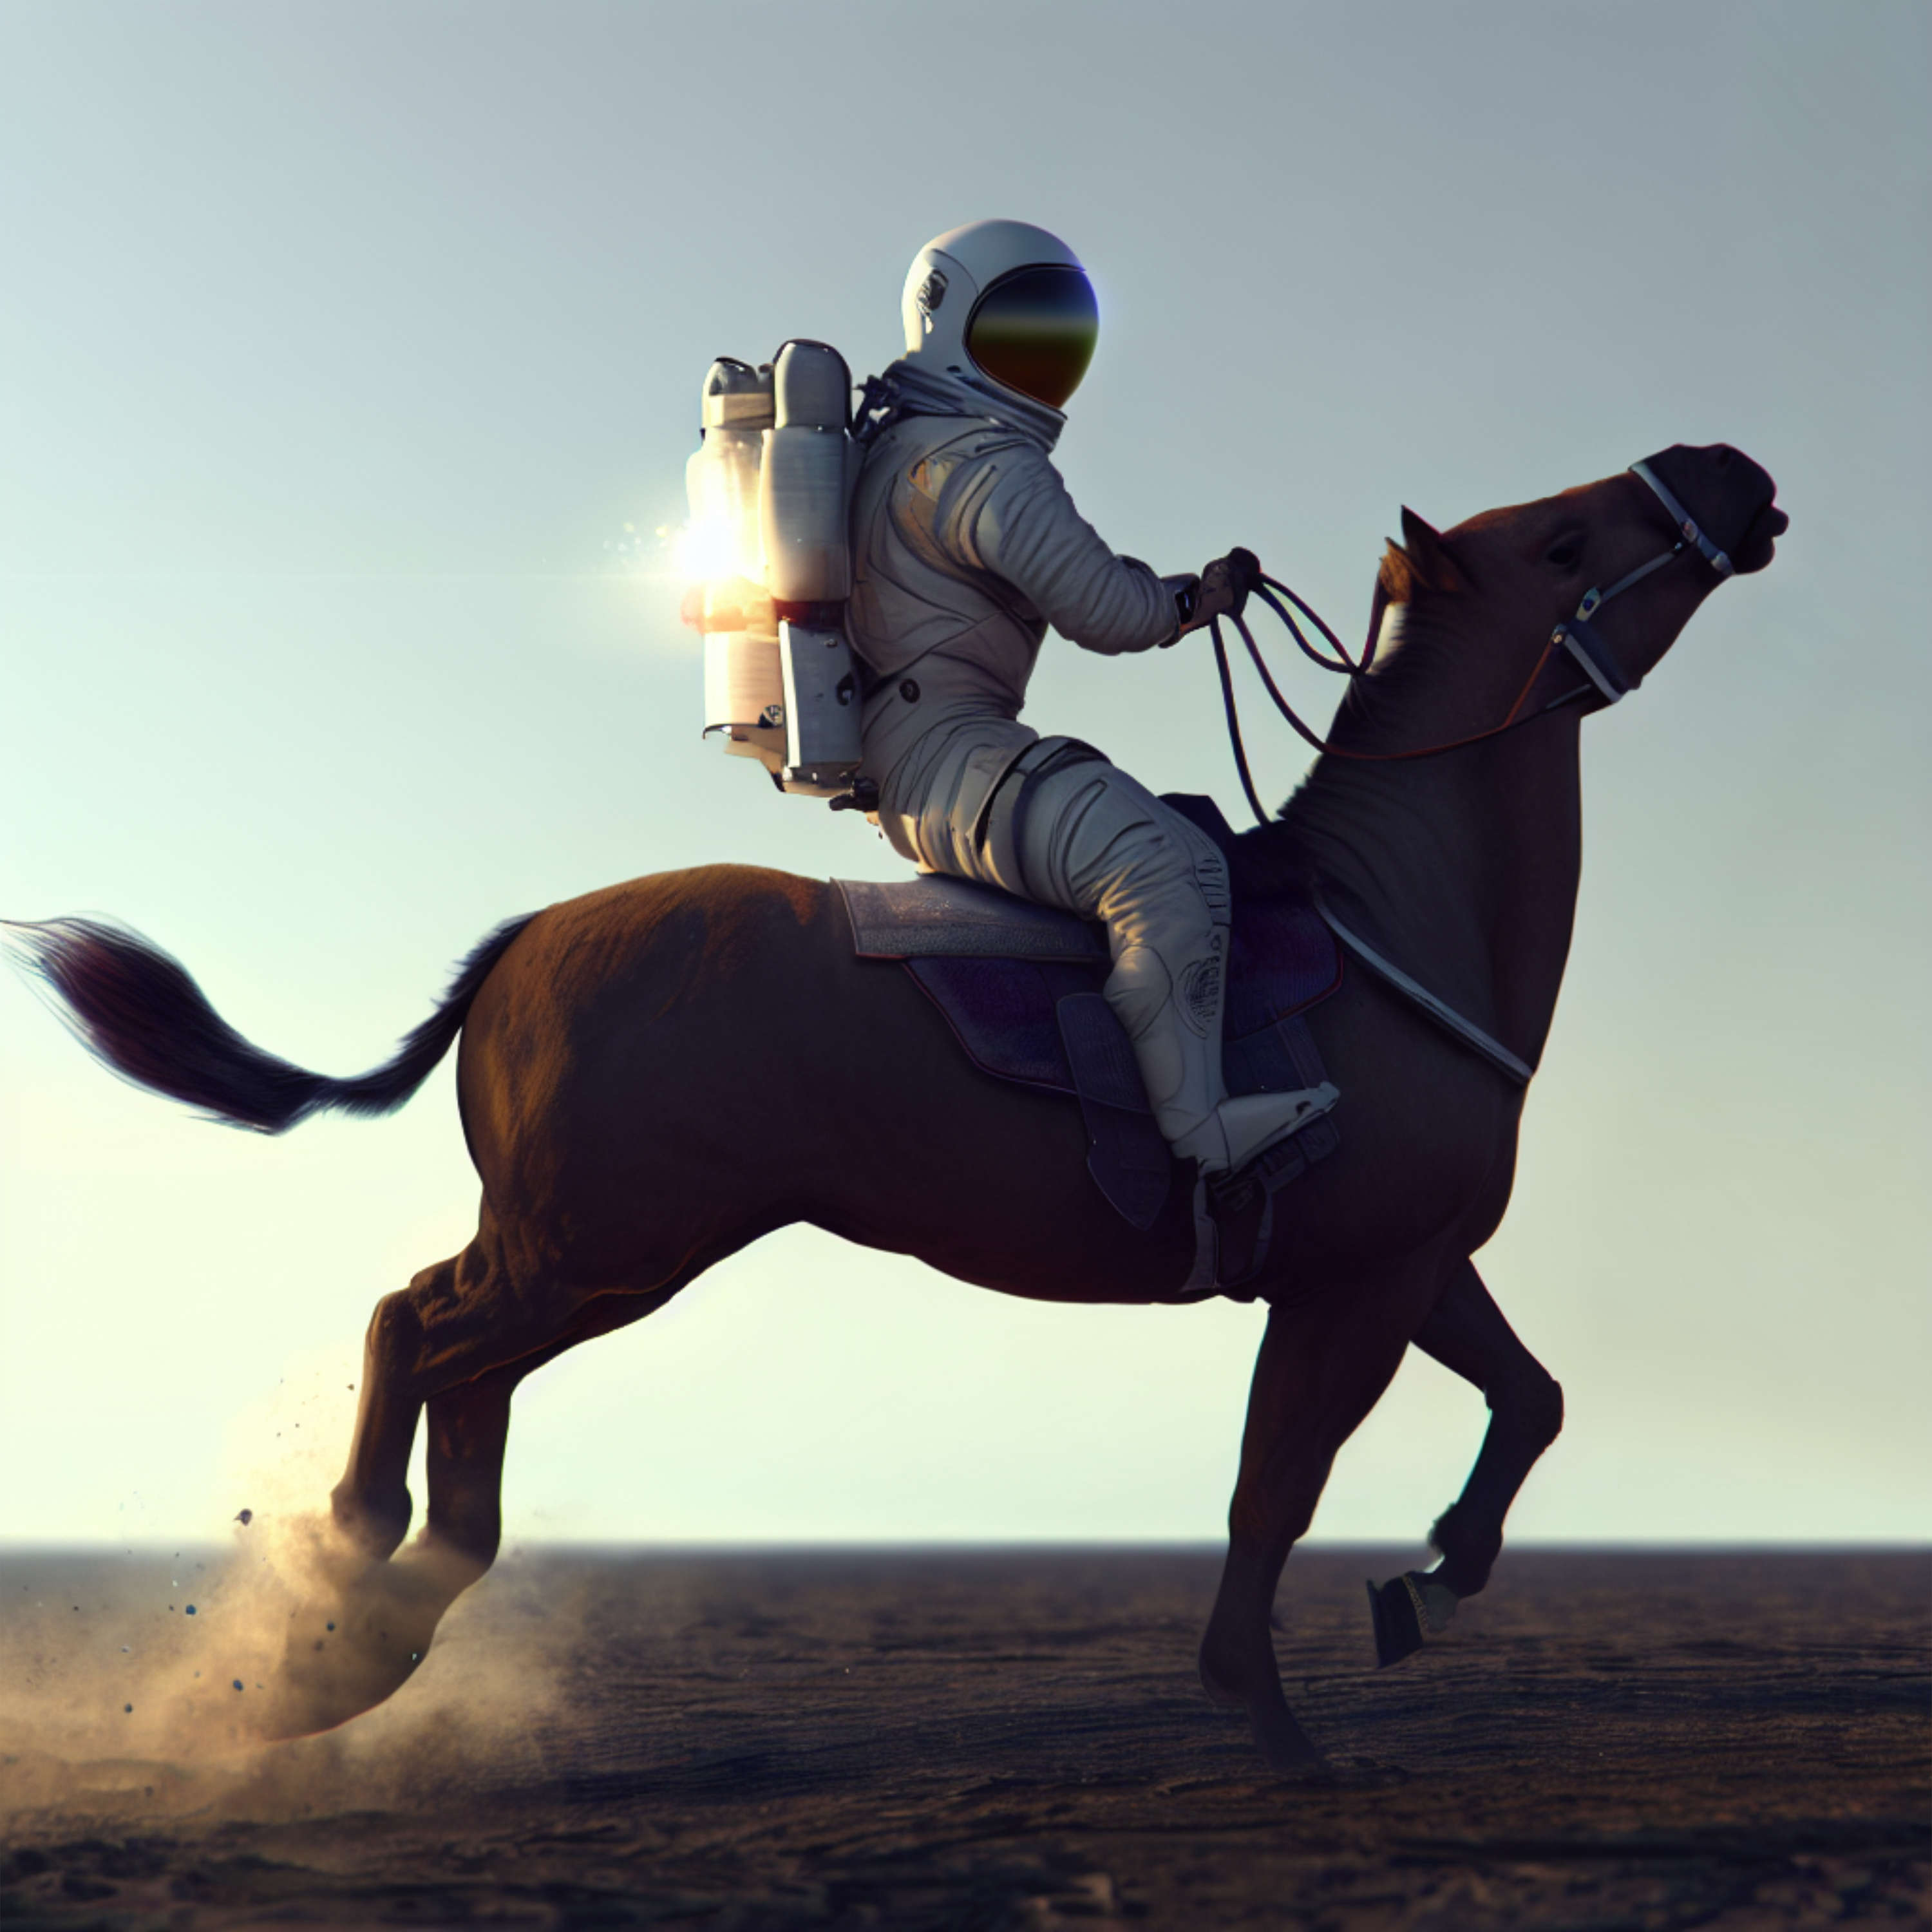 Microsoft Paint вскакивает на подножку генеративного искусственного интеллекта, а DALL-E берет на себя поводья причудливых лошадей